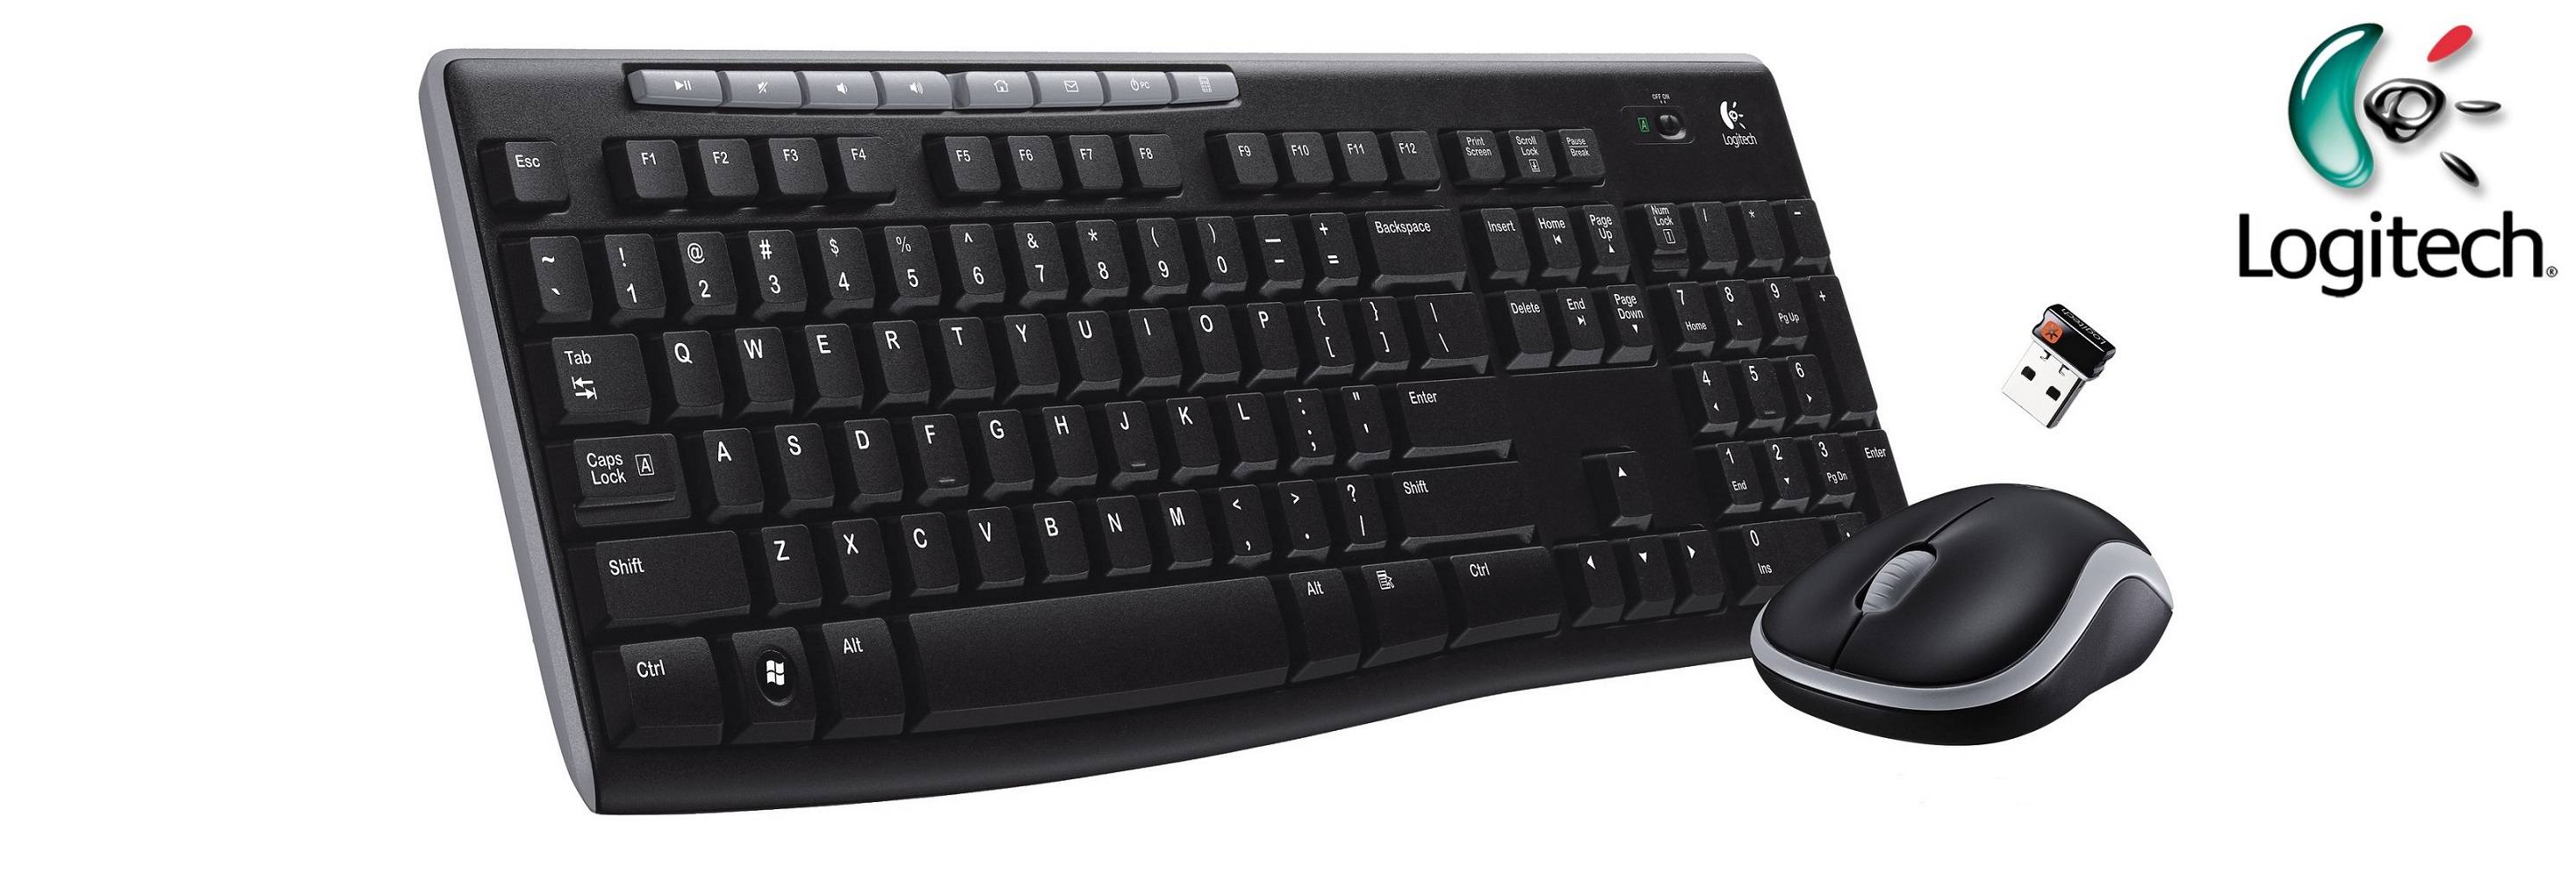 Клавиатура + Мышь беспроводная Logitech Wireless Combo MK270